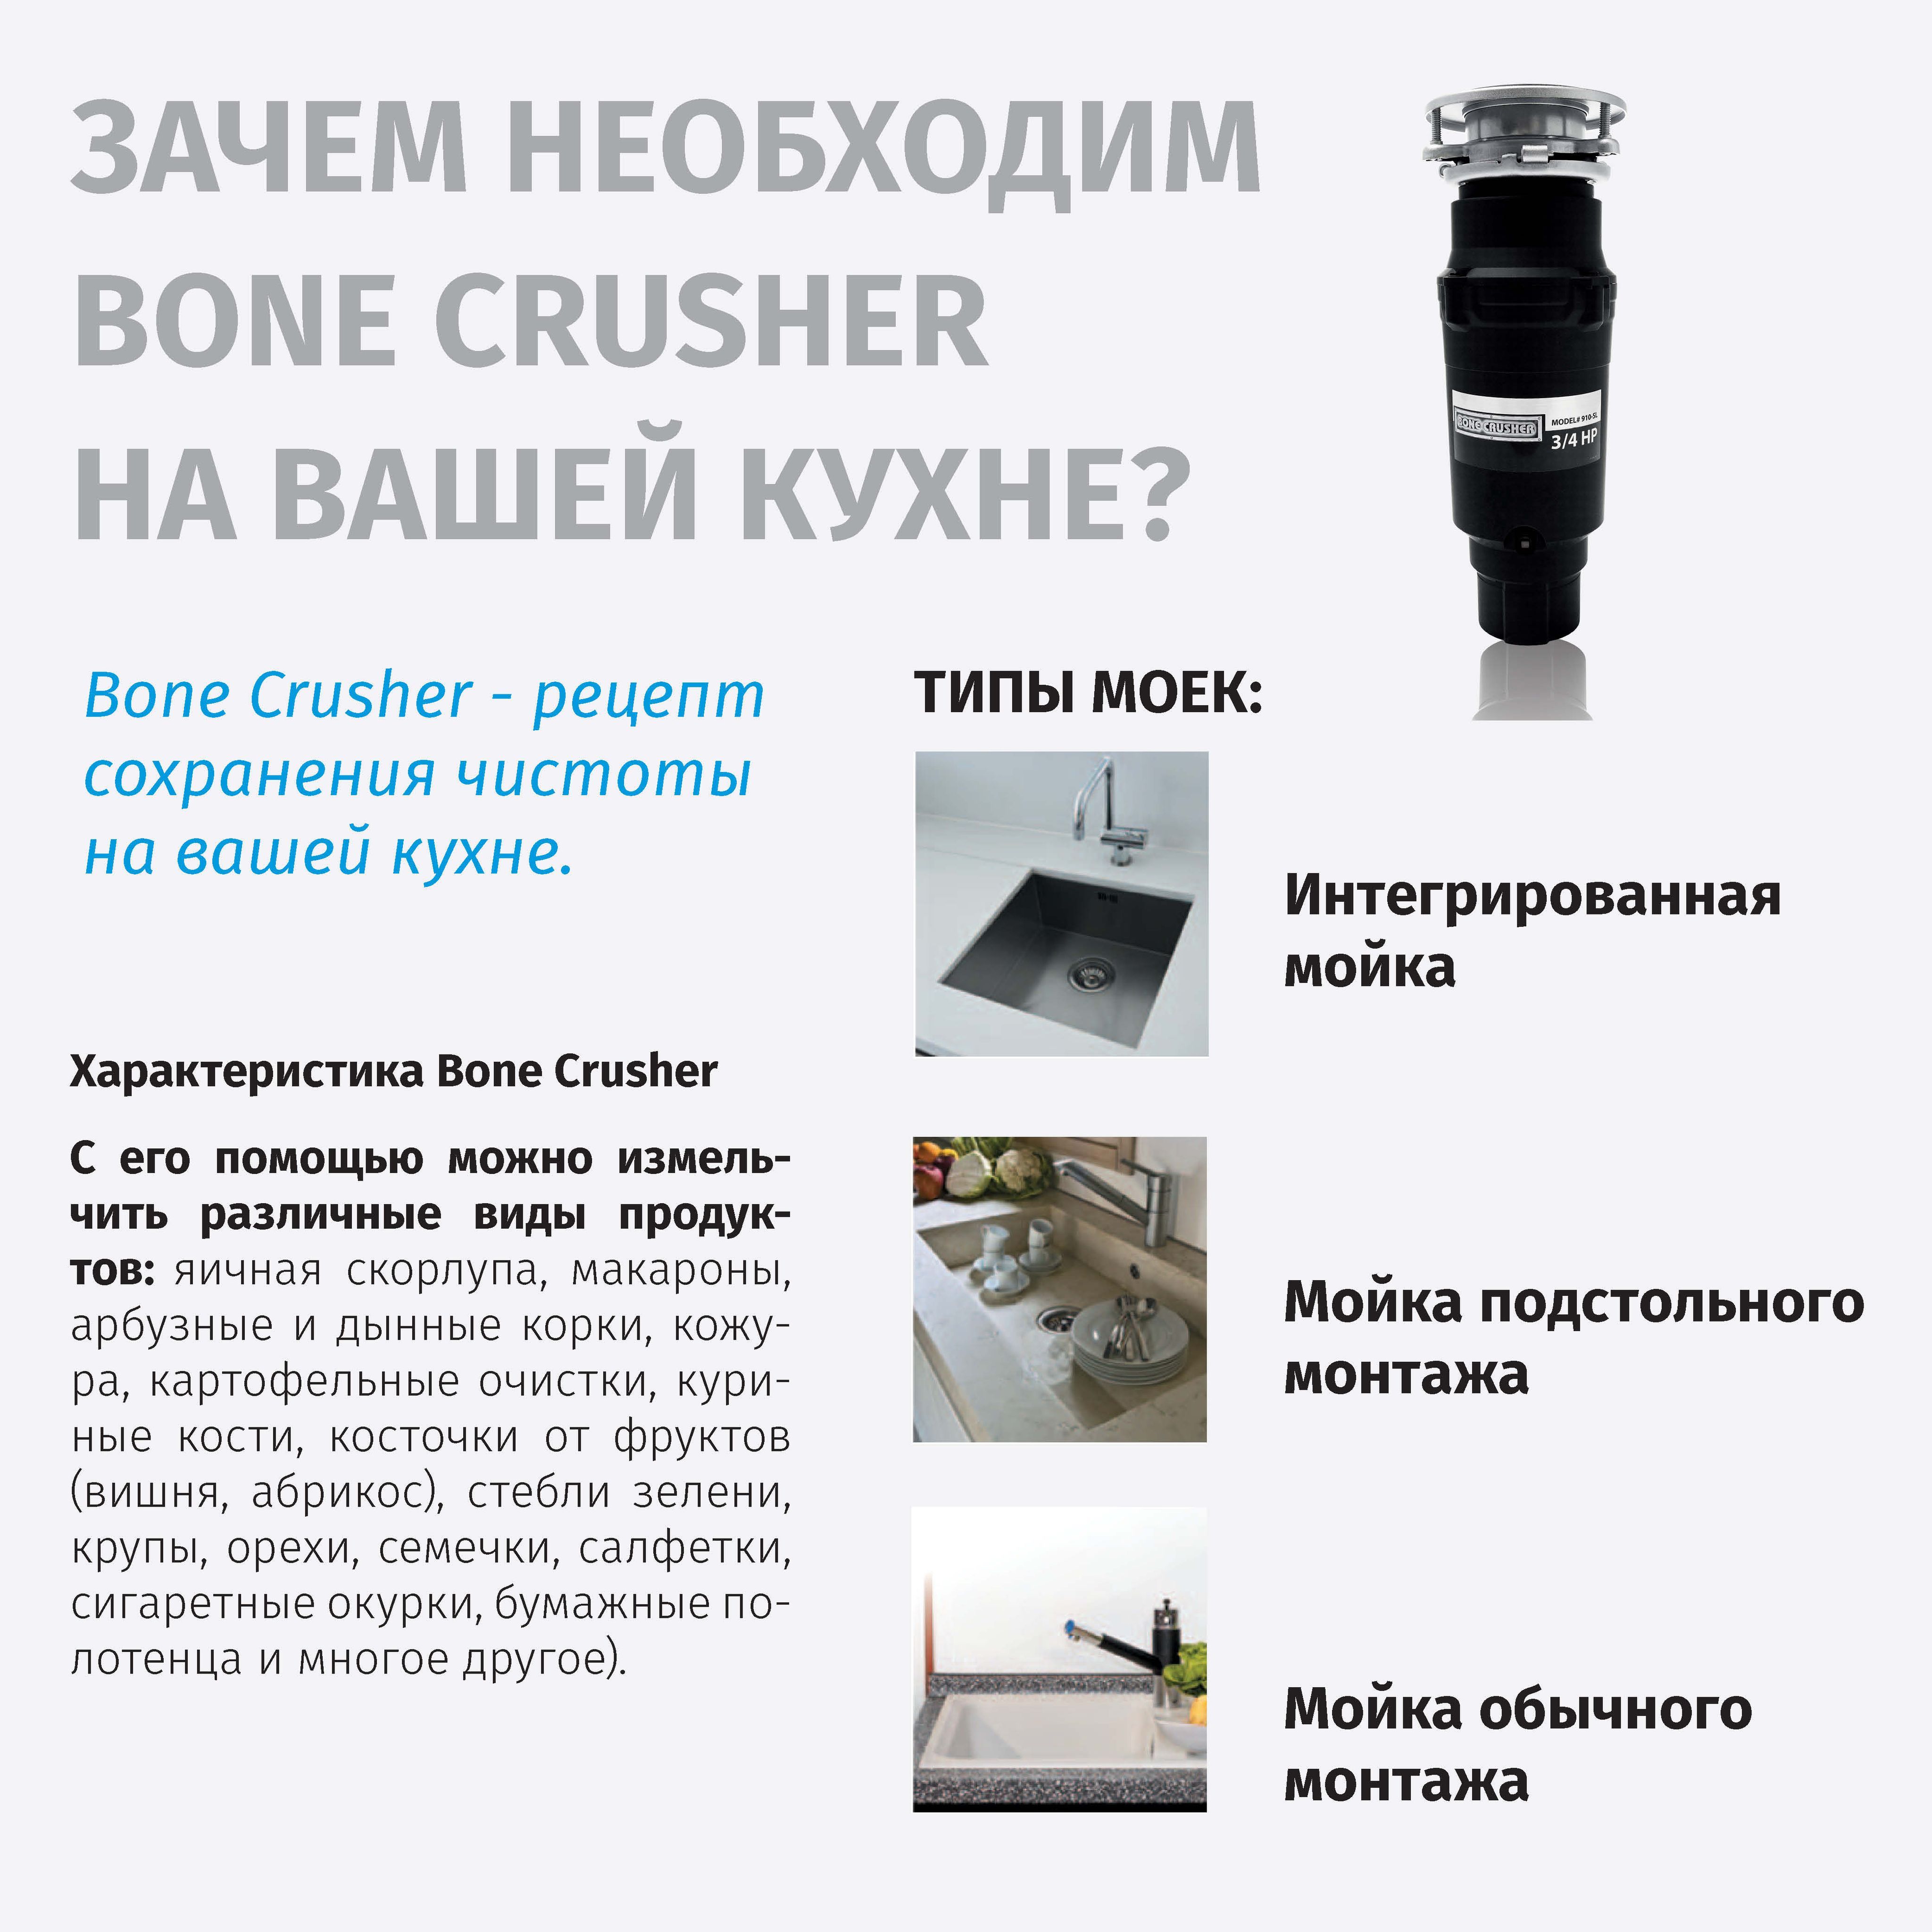 Bone Crusher Bc 910